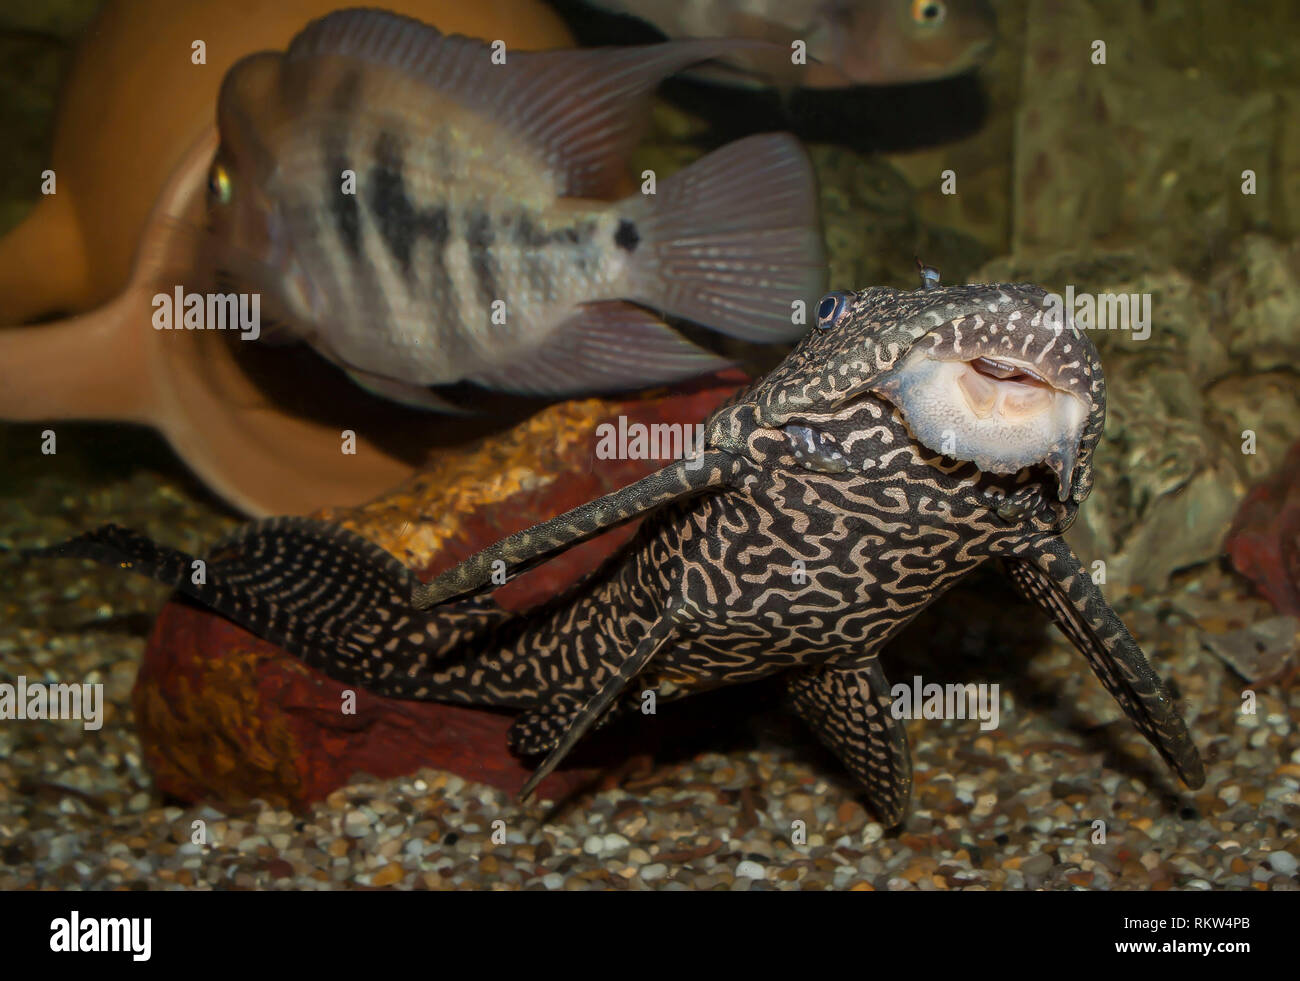 Aquarium life, Central American fish Stock Photo